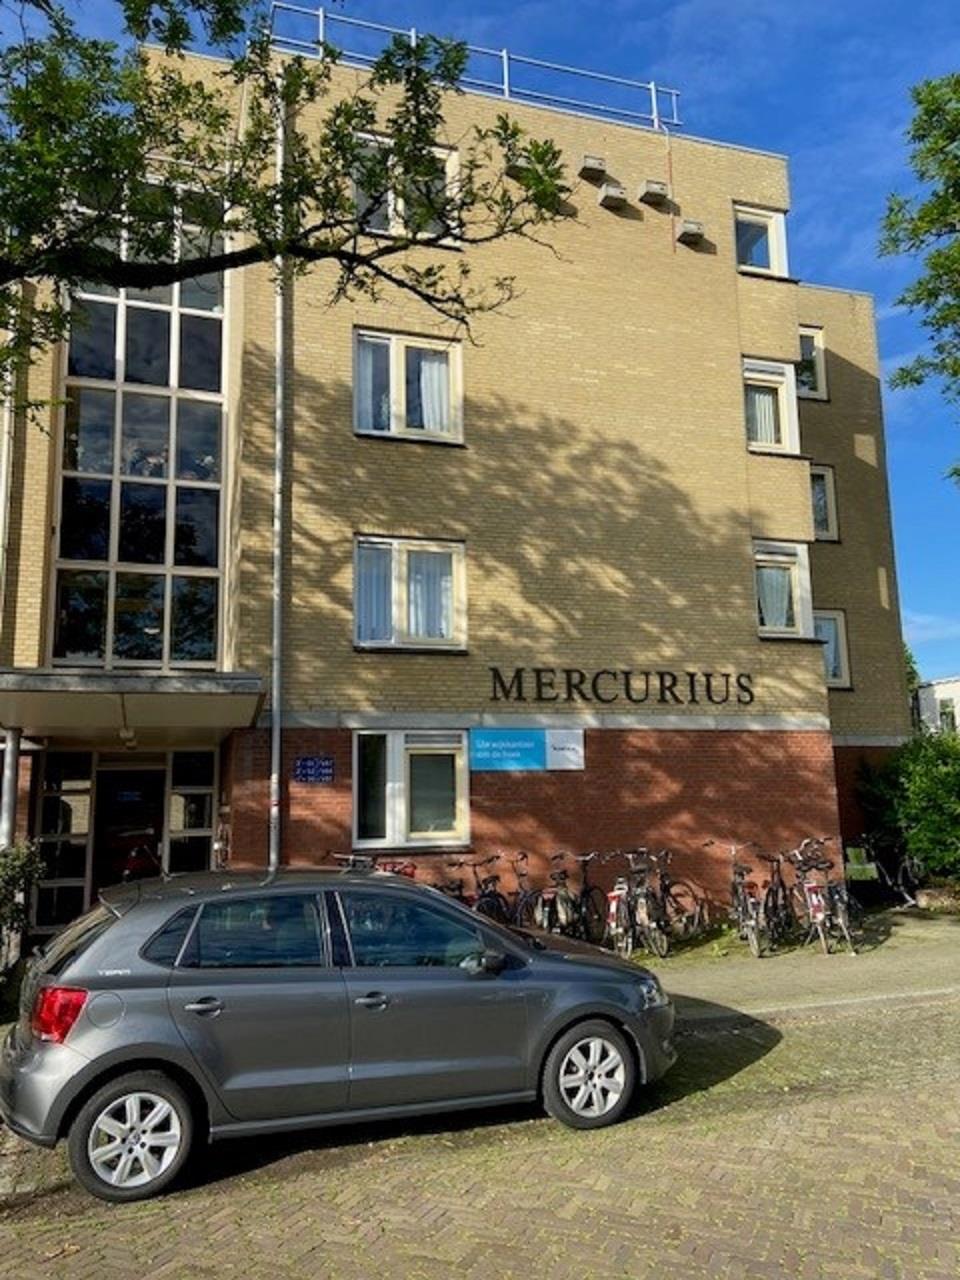 Maasplein 65, 6541 XS Nijmegen, Nederland